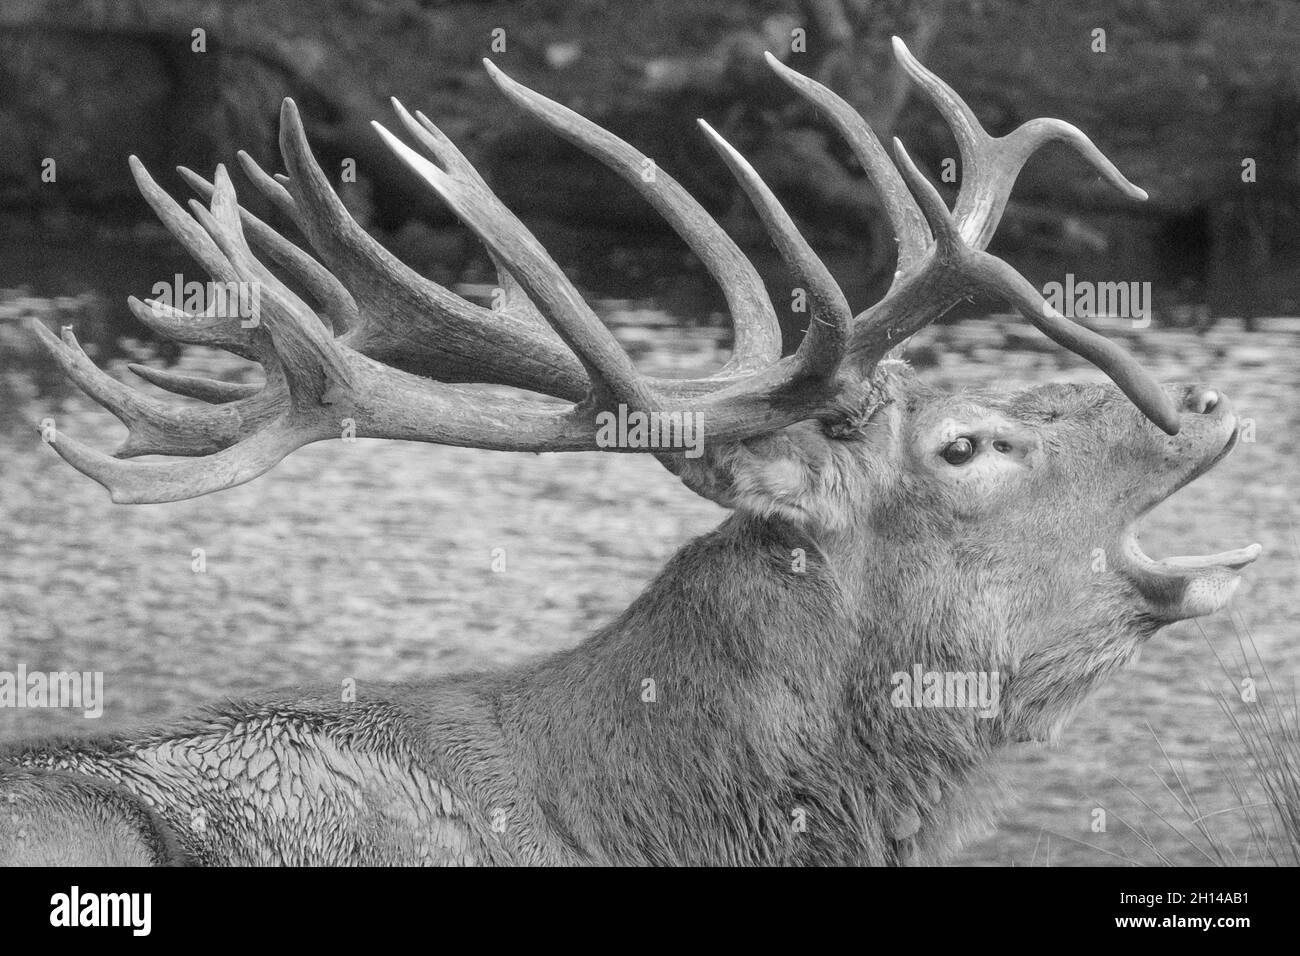 Red Stag Deer anglais présentant des bois, aboyant, hurlant et appelant, en ornières, en saison de reproduction. Woburn, Angleterre. Banque D'Images